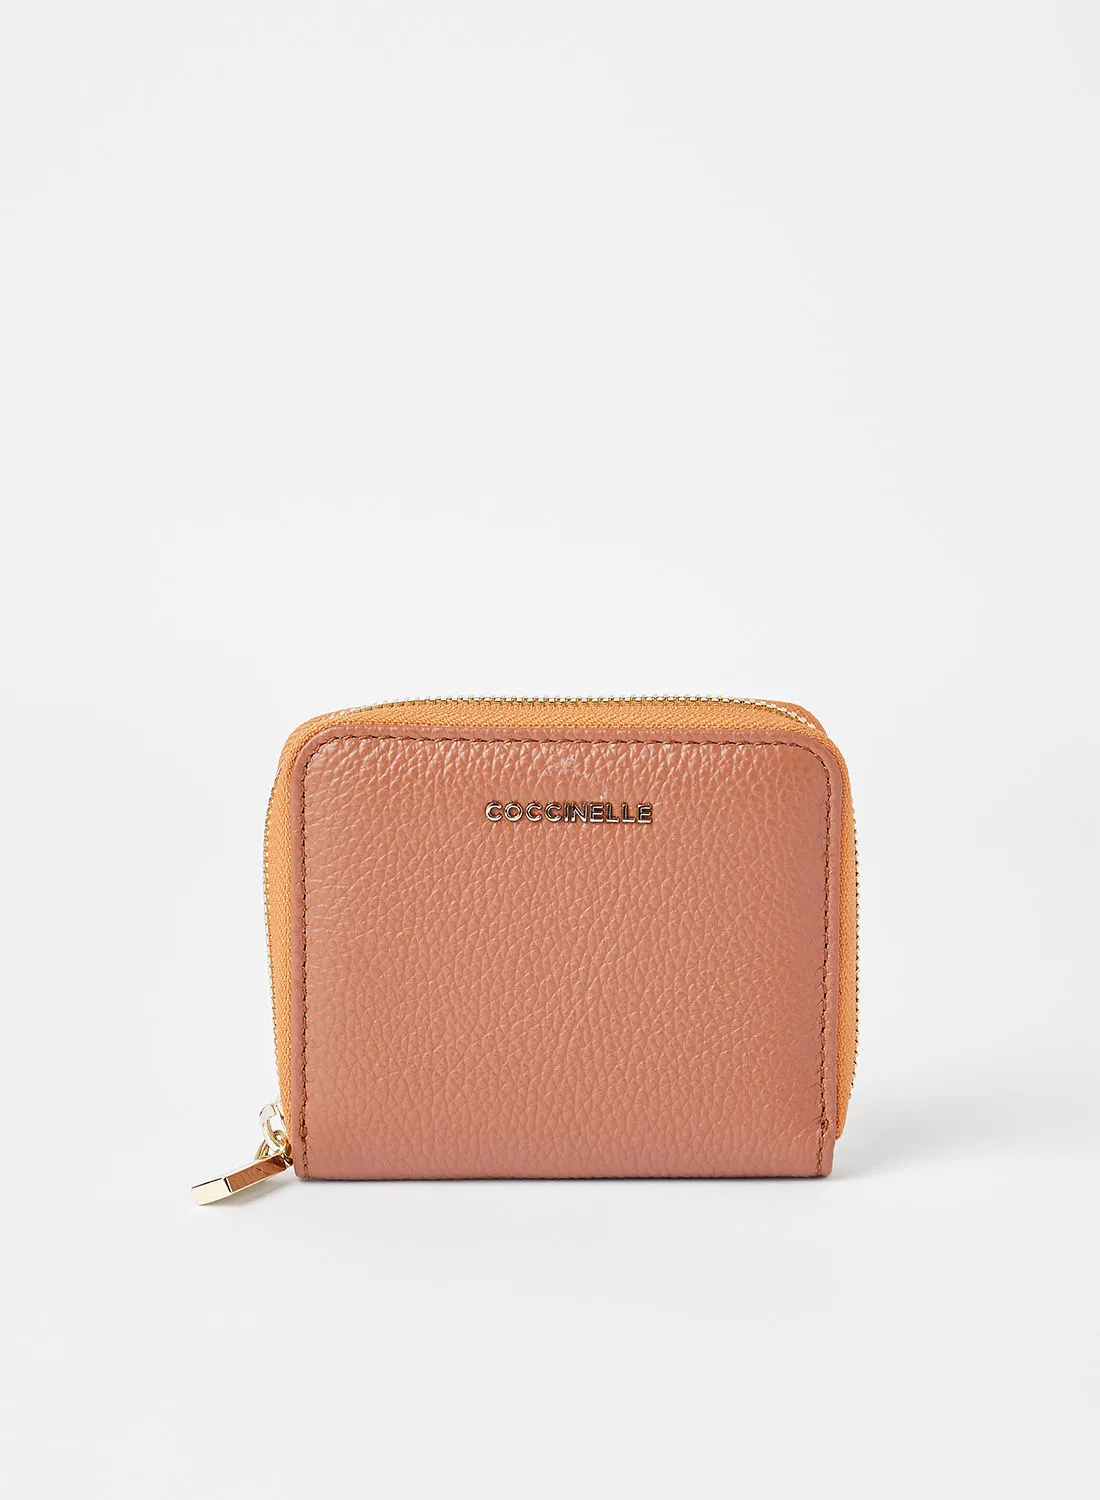 COCCINELLE Leather Zip Around Wallet Brown/Orange